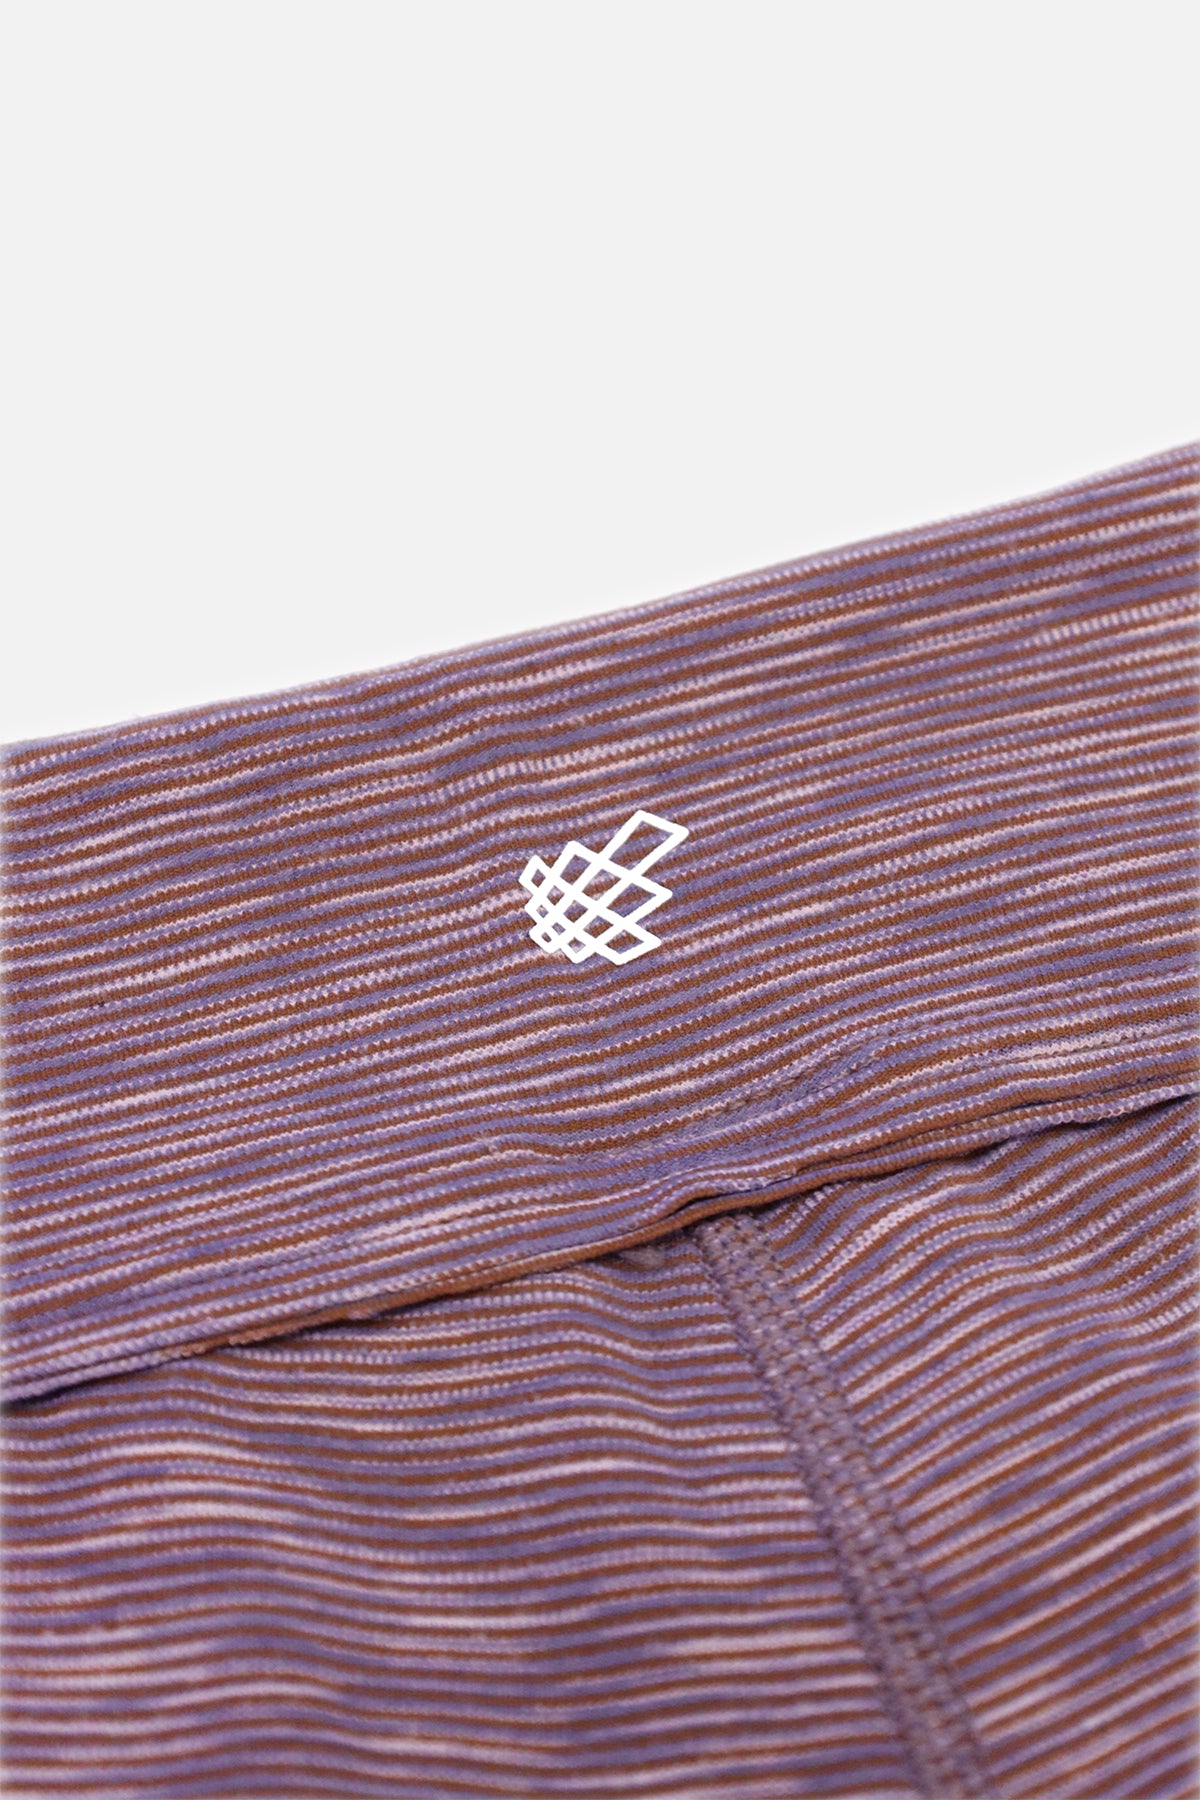 Retro Striped Shorts - Purple